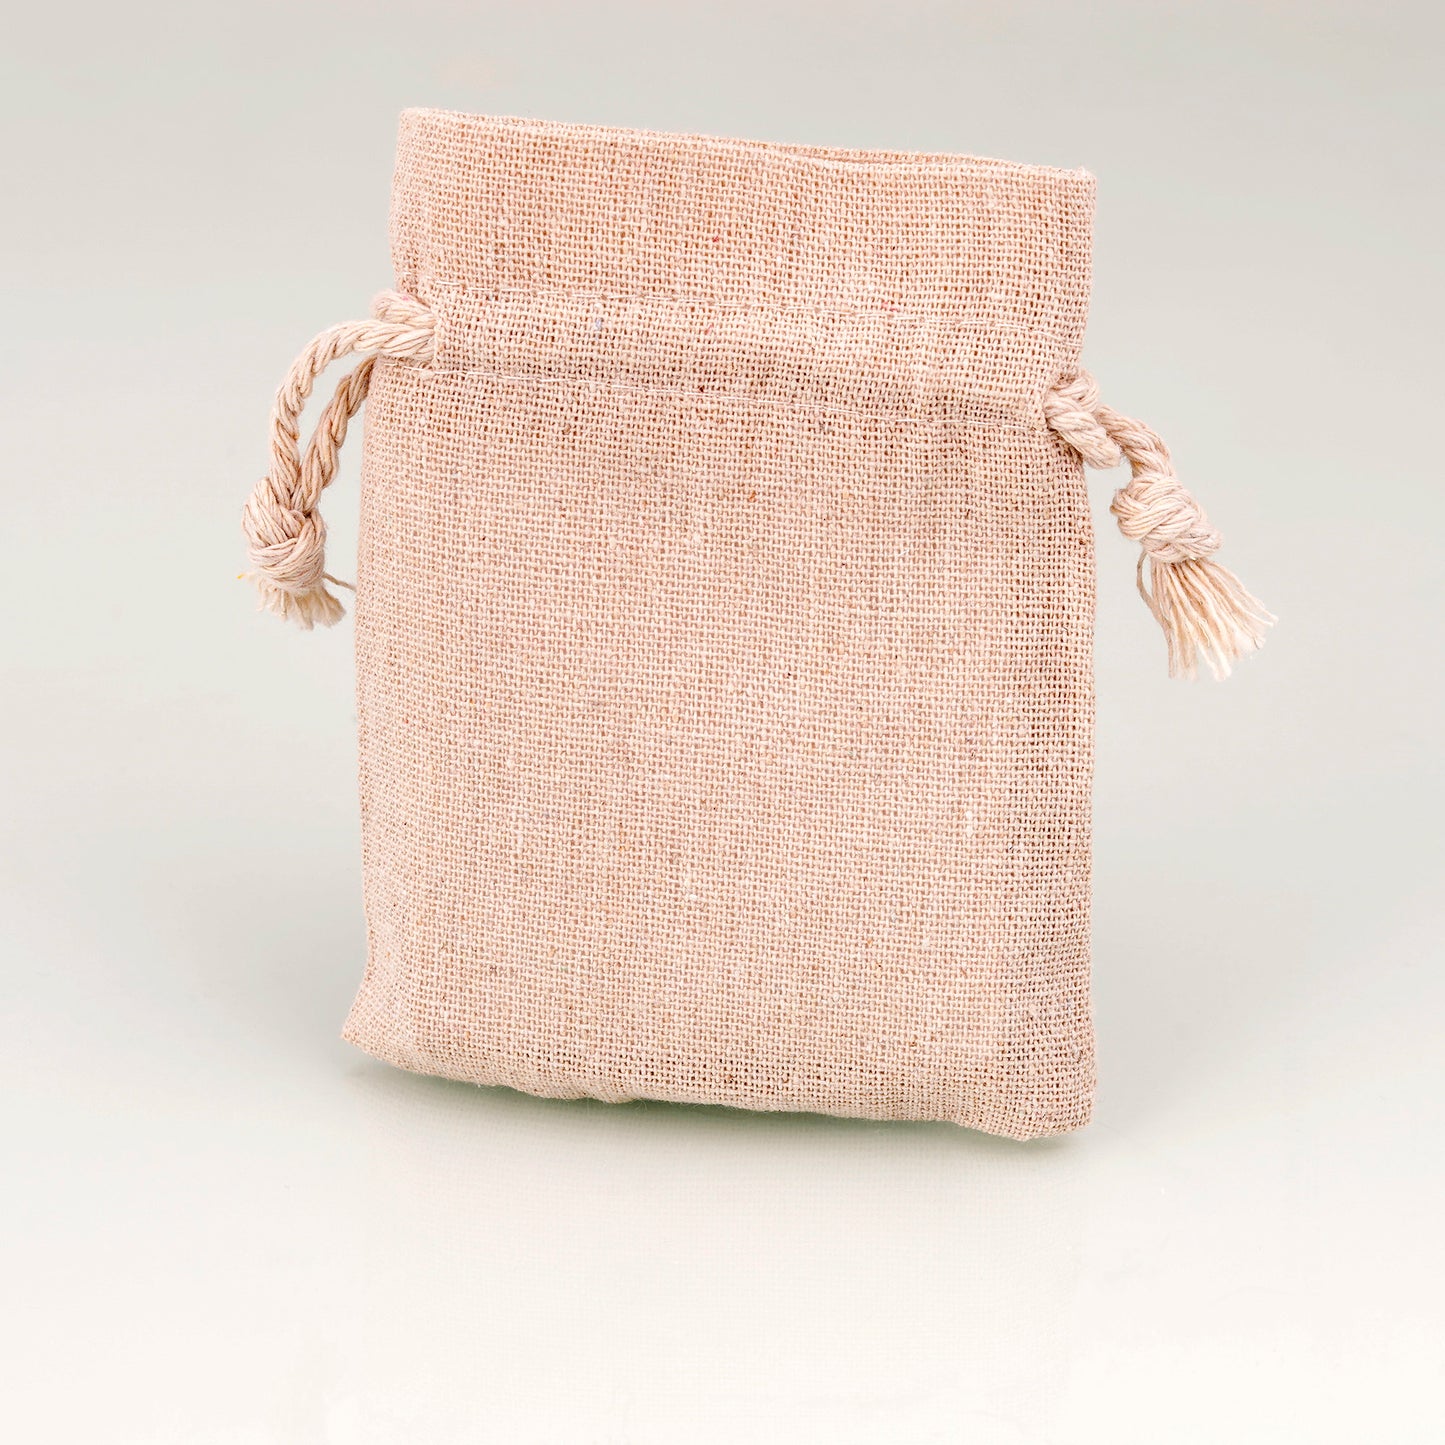 Ombelle Seifensäckchen aus Leinen, unbefüllt, klein, geöffnet